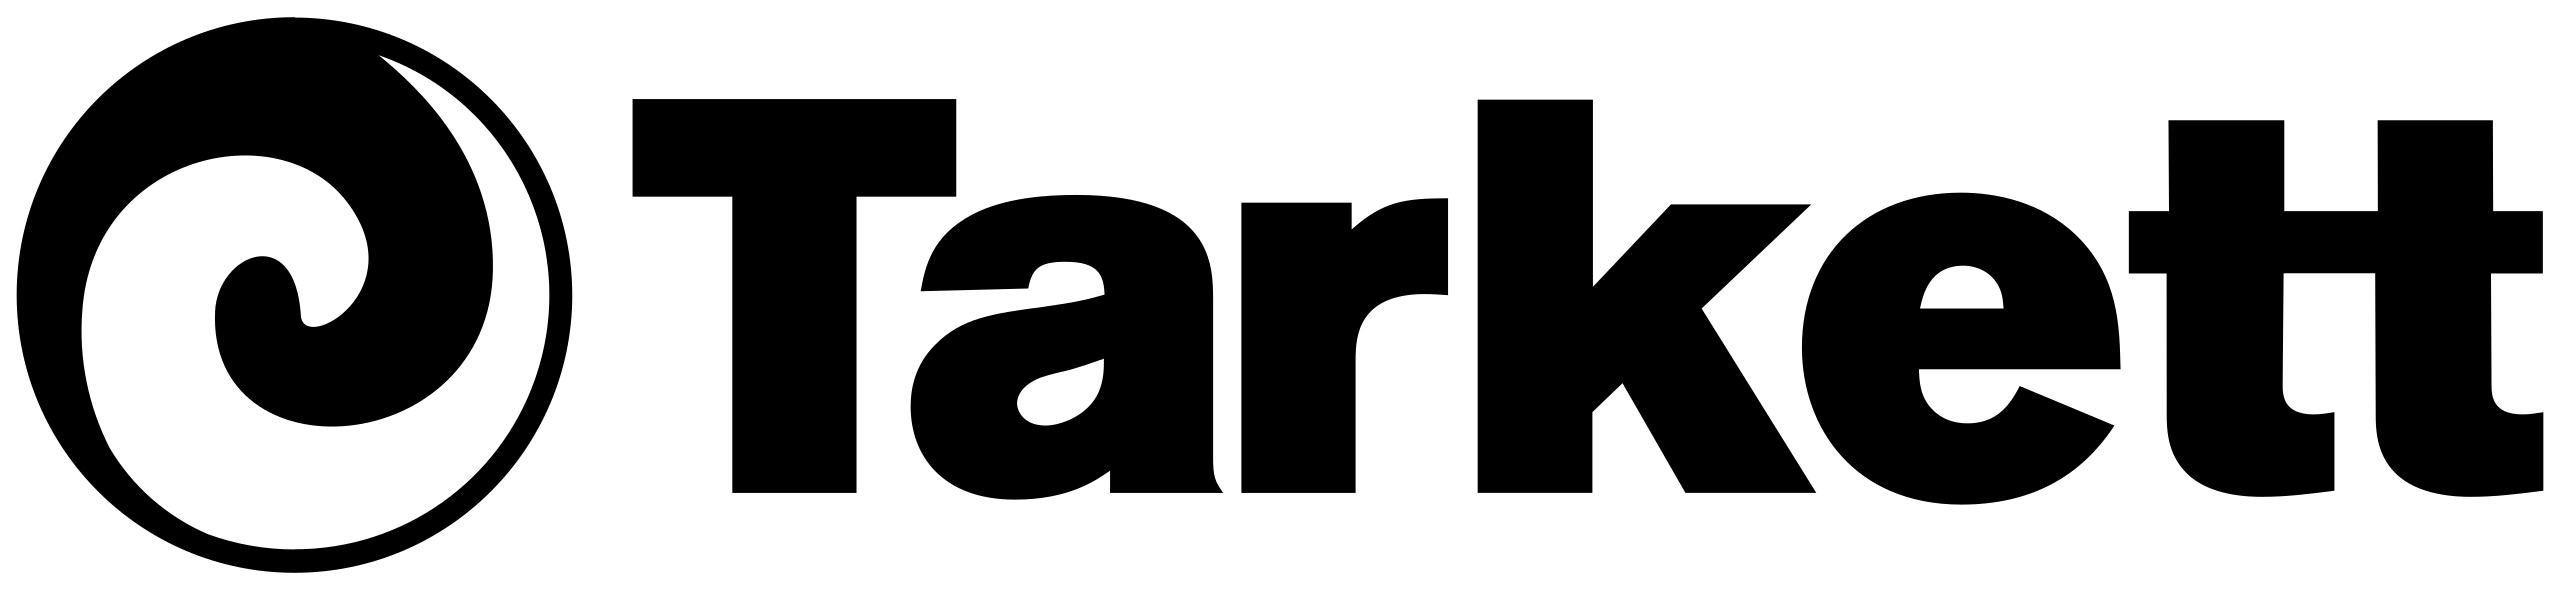 2560px-Tarkett_logo.svg